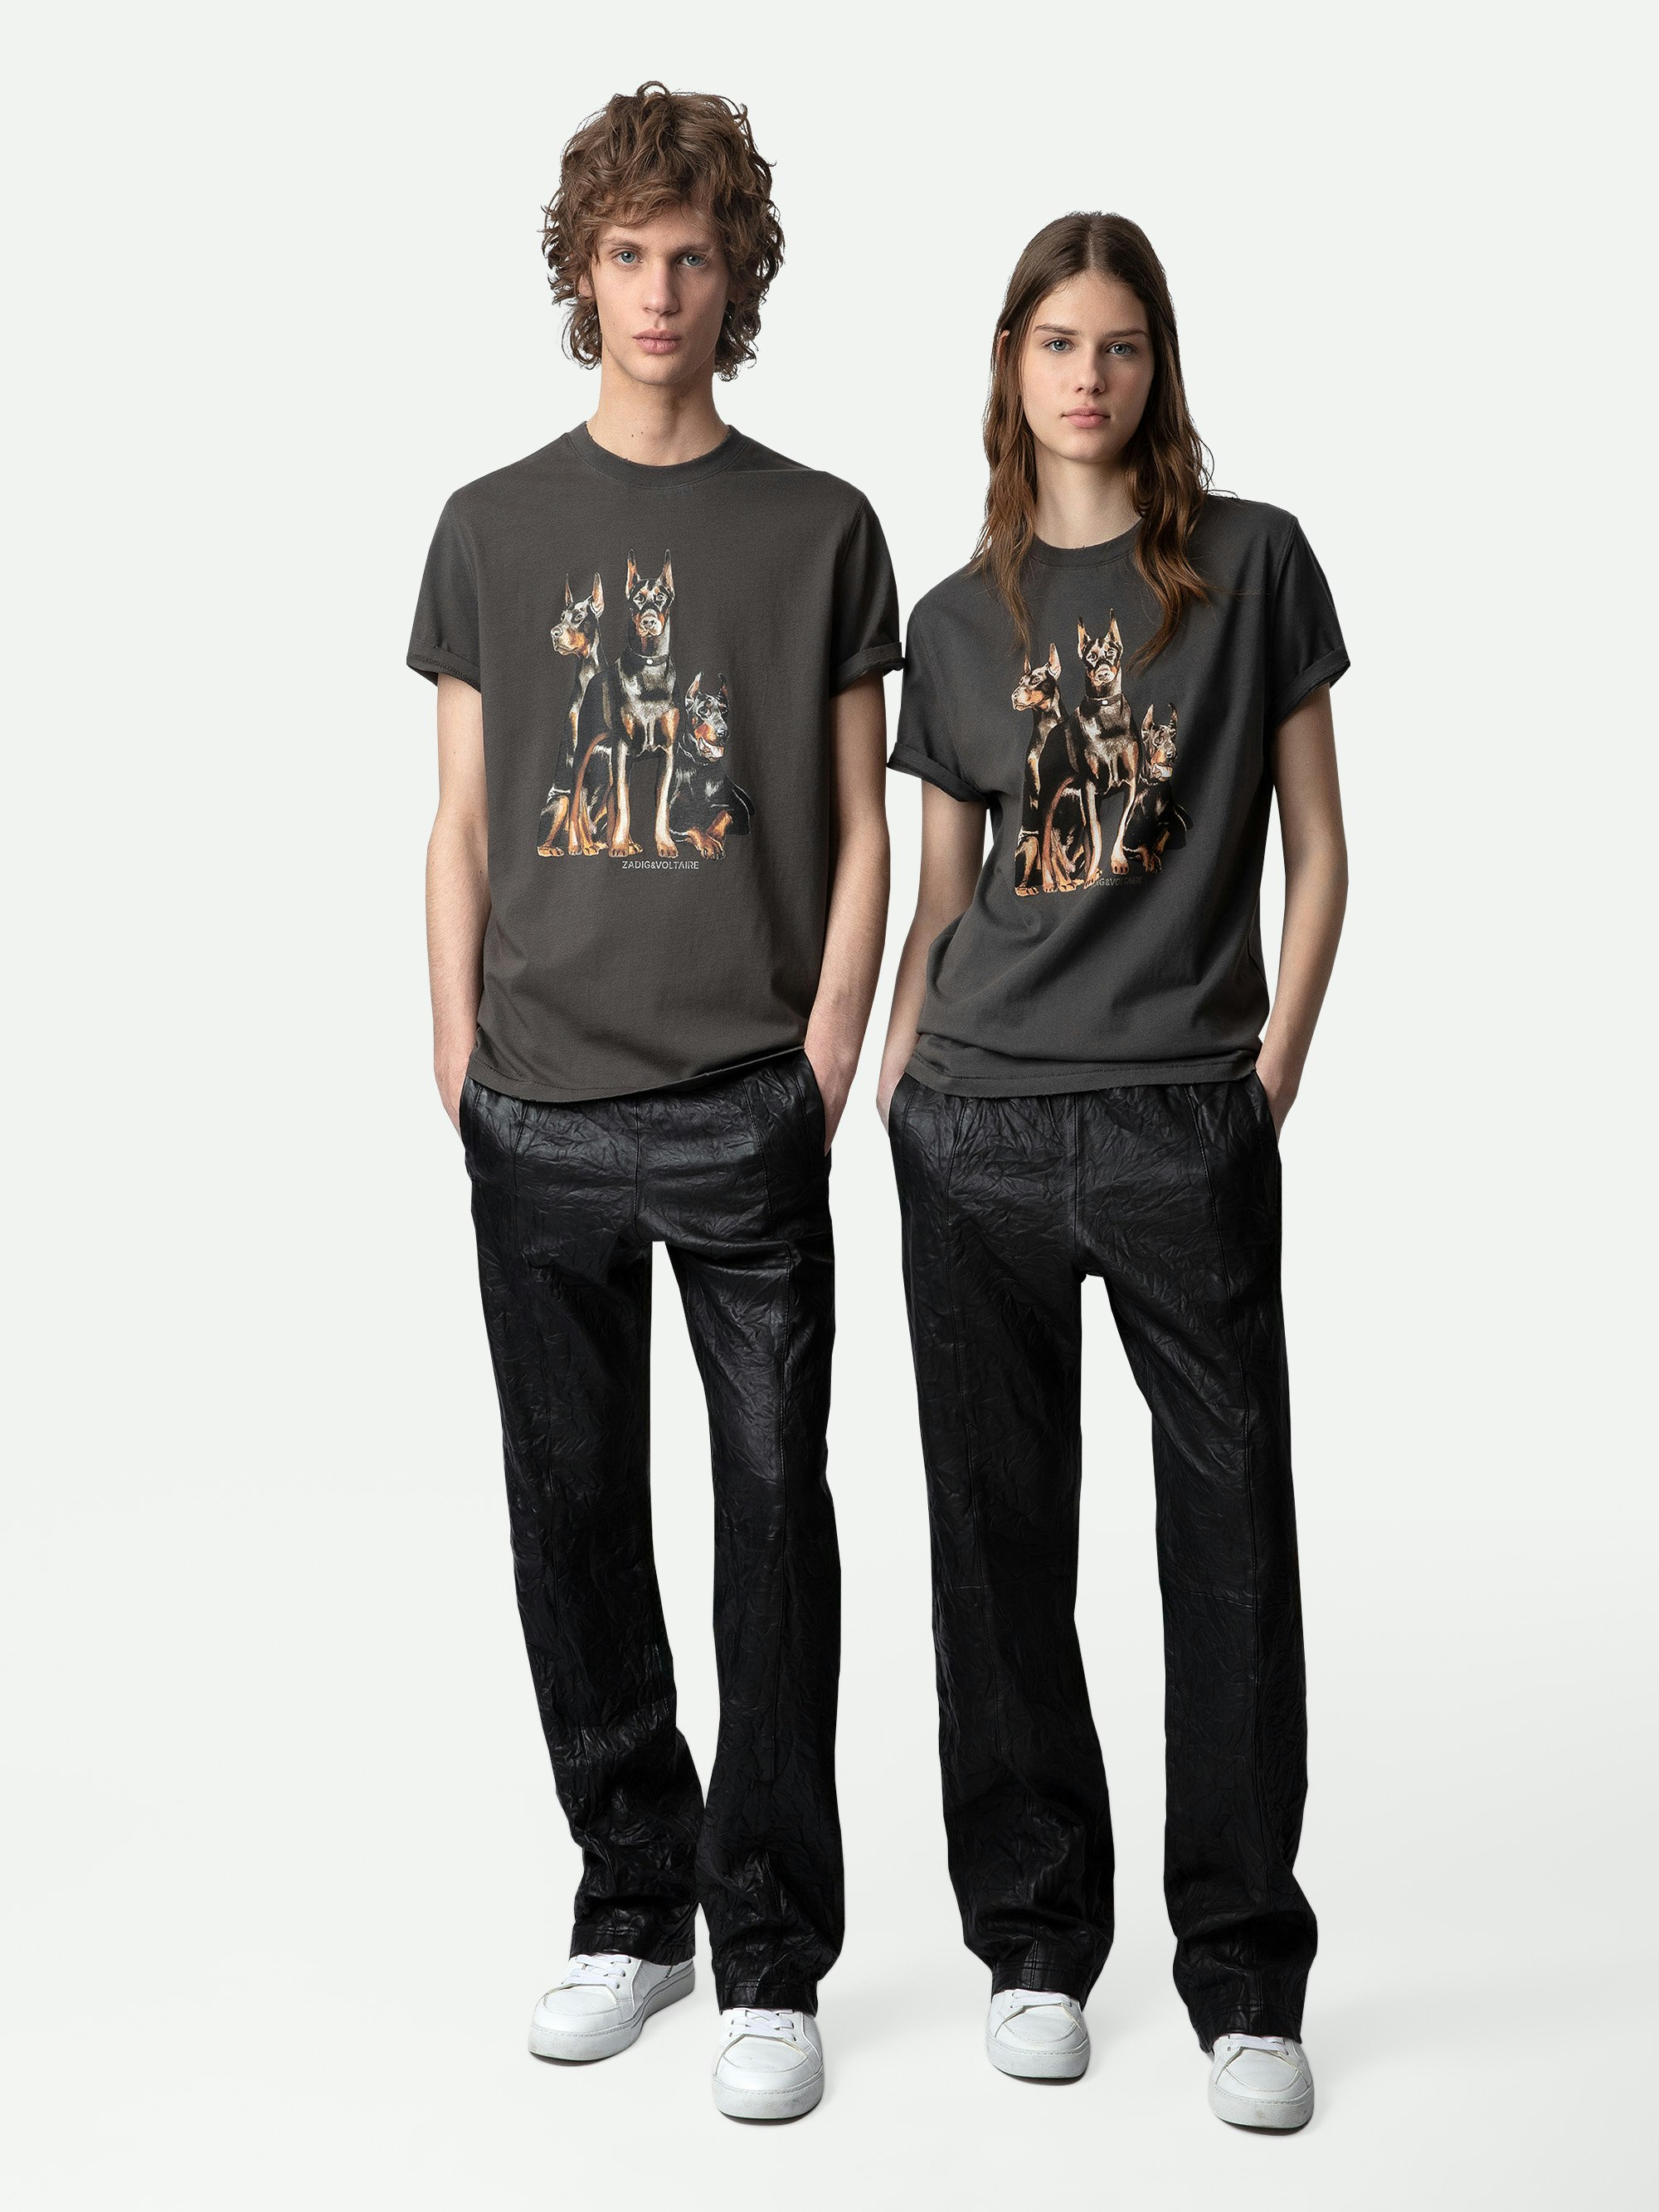 Camiseta Jimmy - Camiseta marrón de manga corta de algodón con estampados de dóberman y concierto.